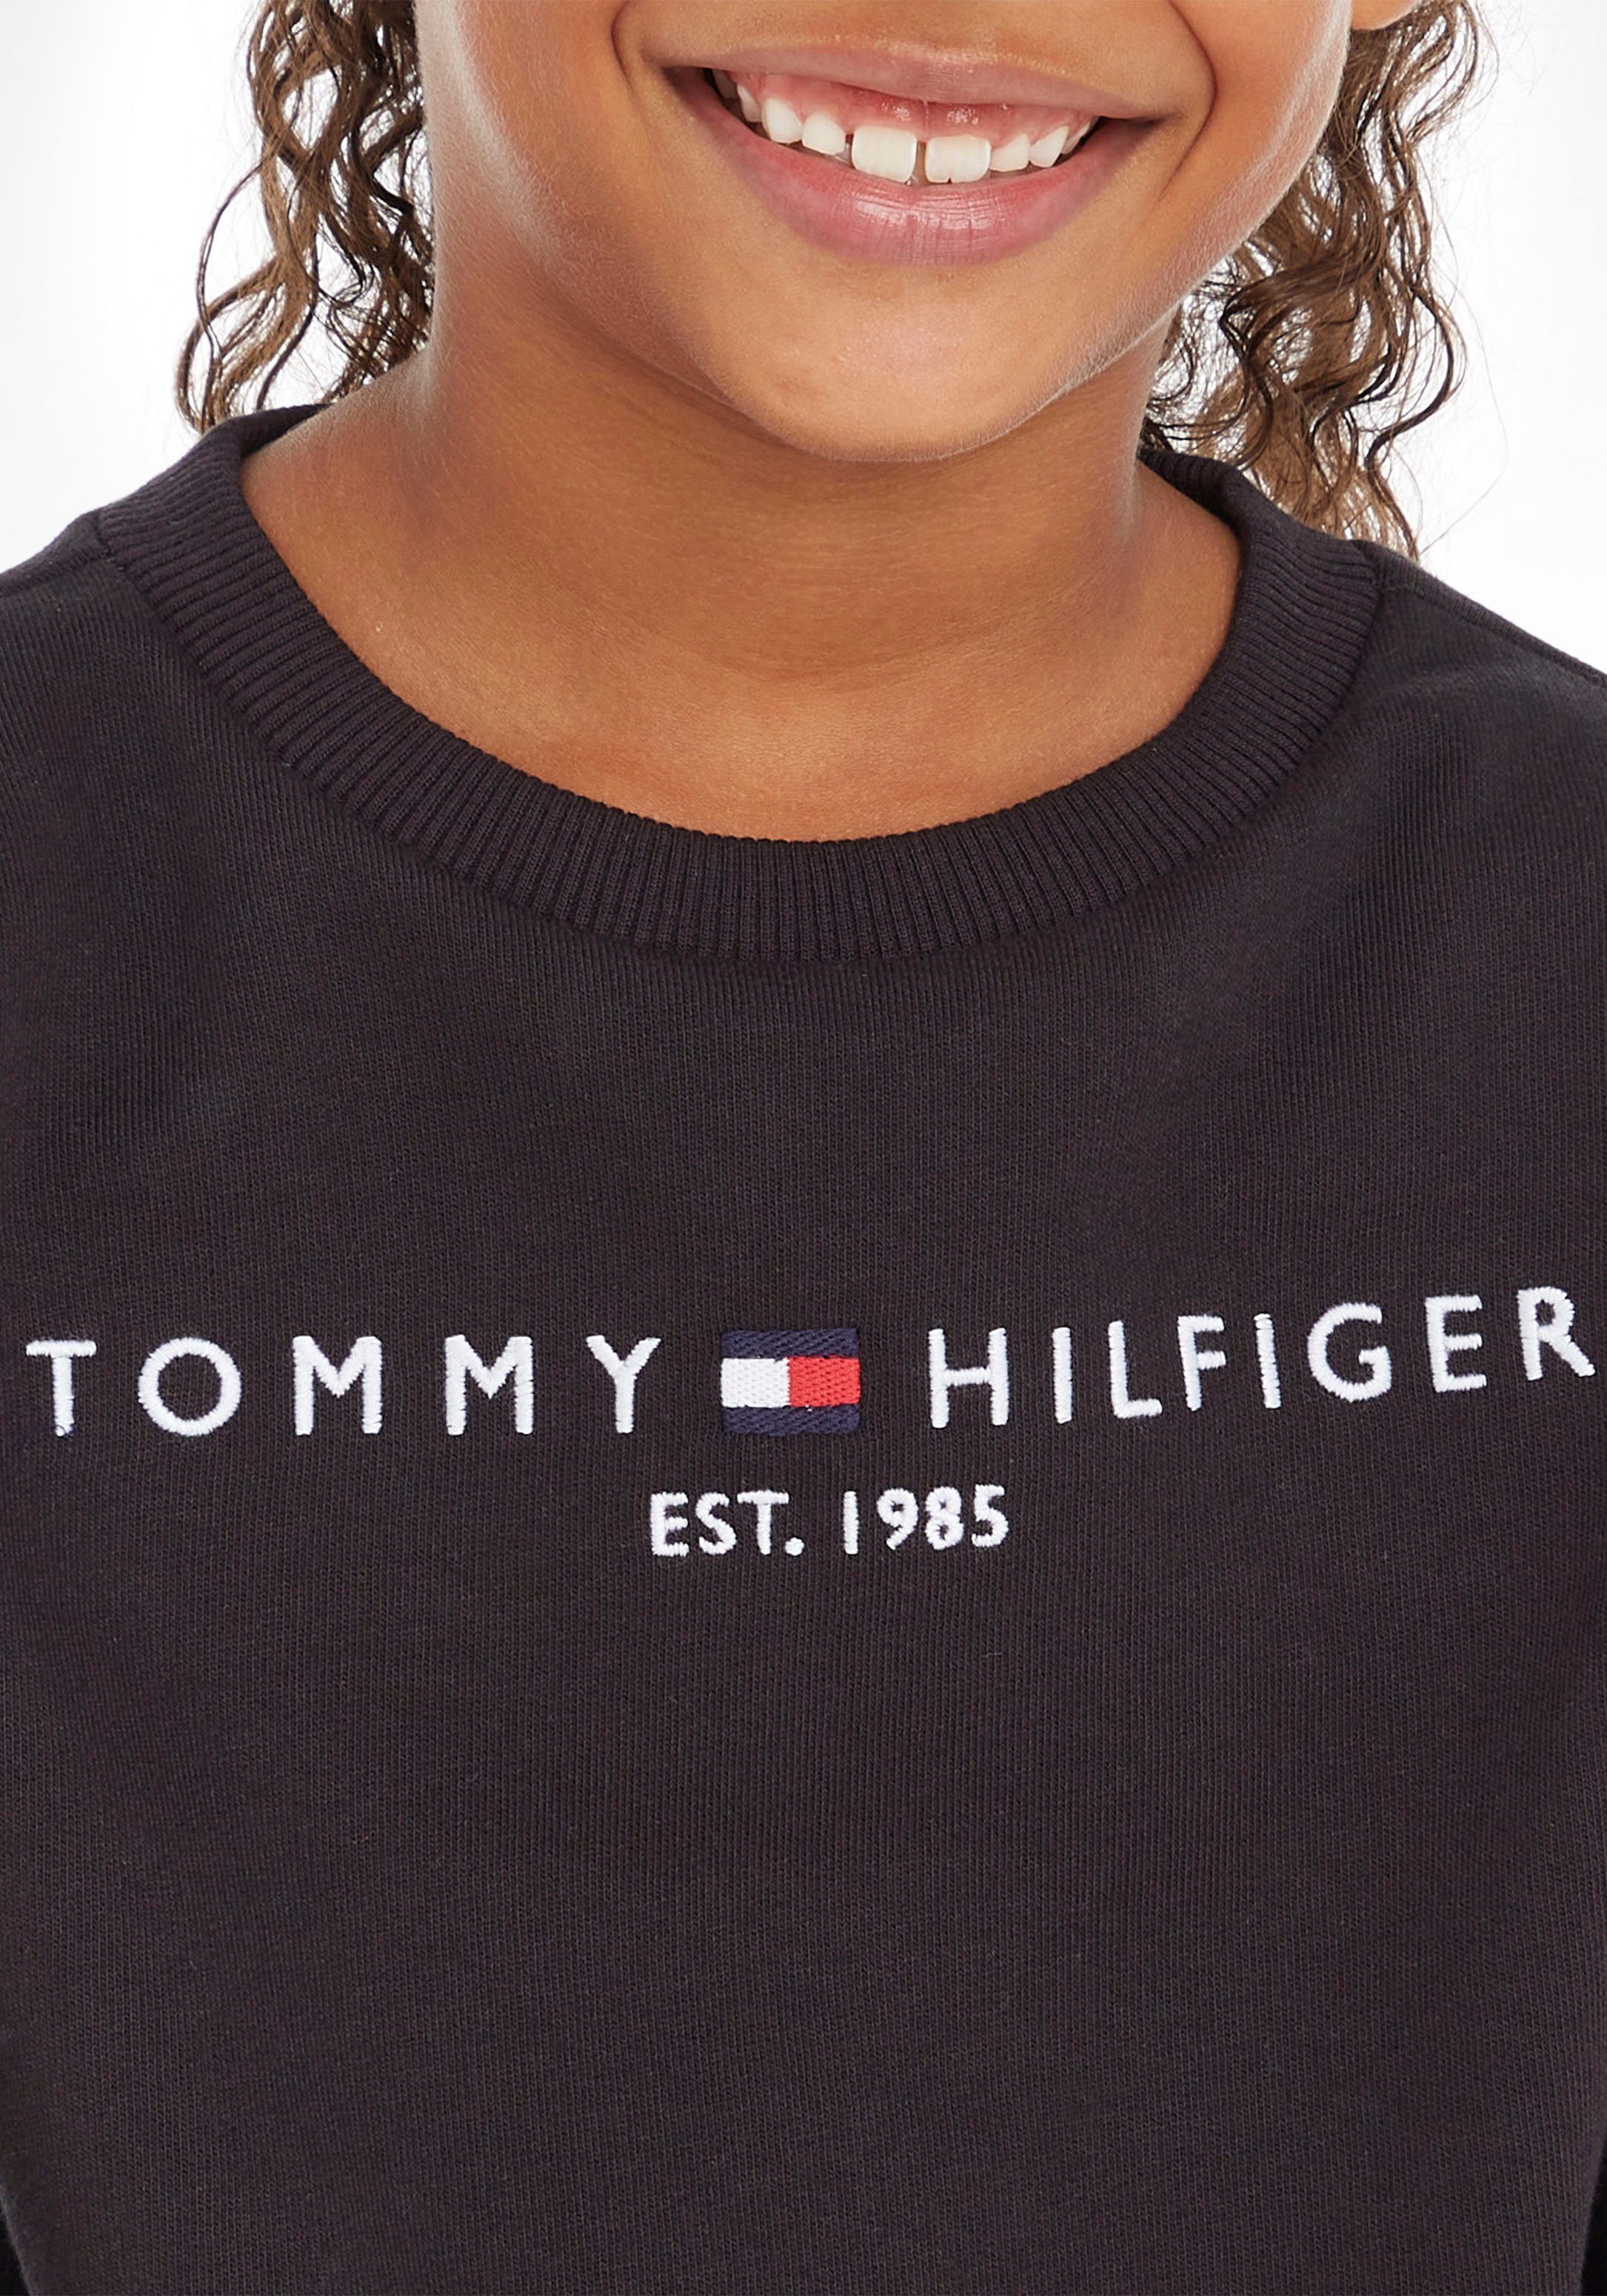 Tommy Hilfiger Sweatshirt ESSENTIAL SWEATSHIRT Kinder und Jungen Junior MiniMe,für Kids Mädchen